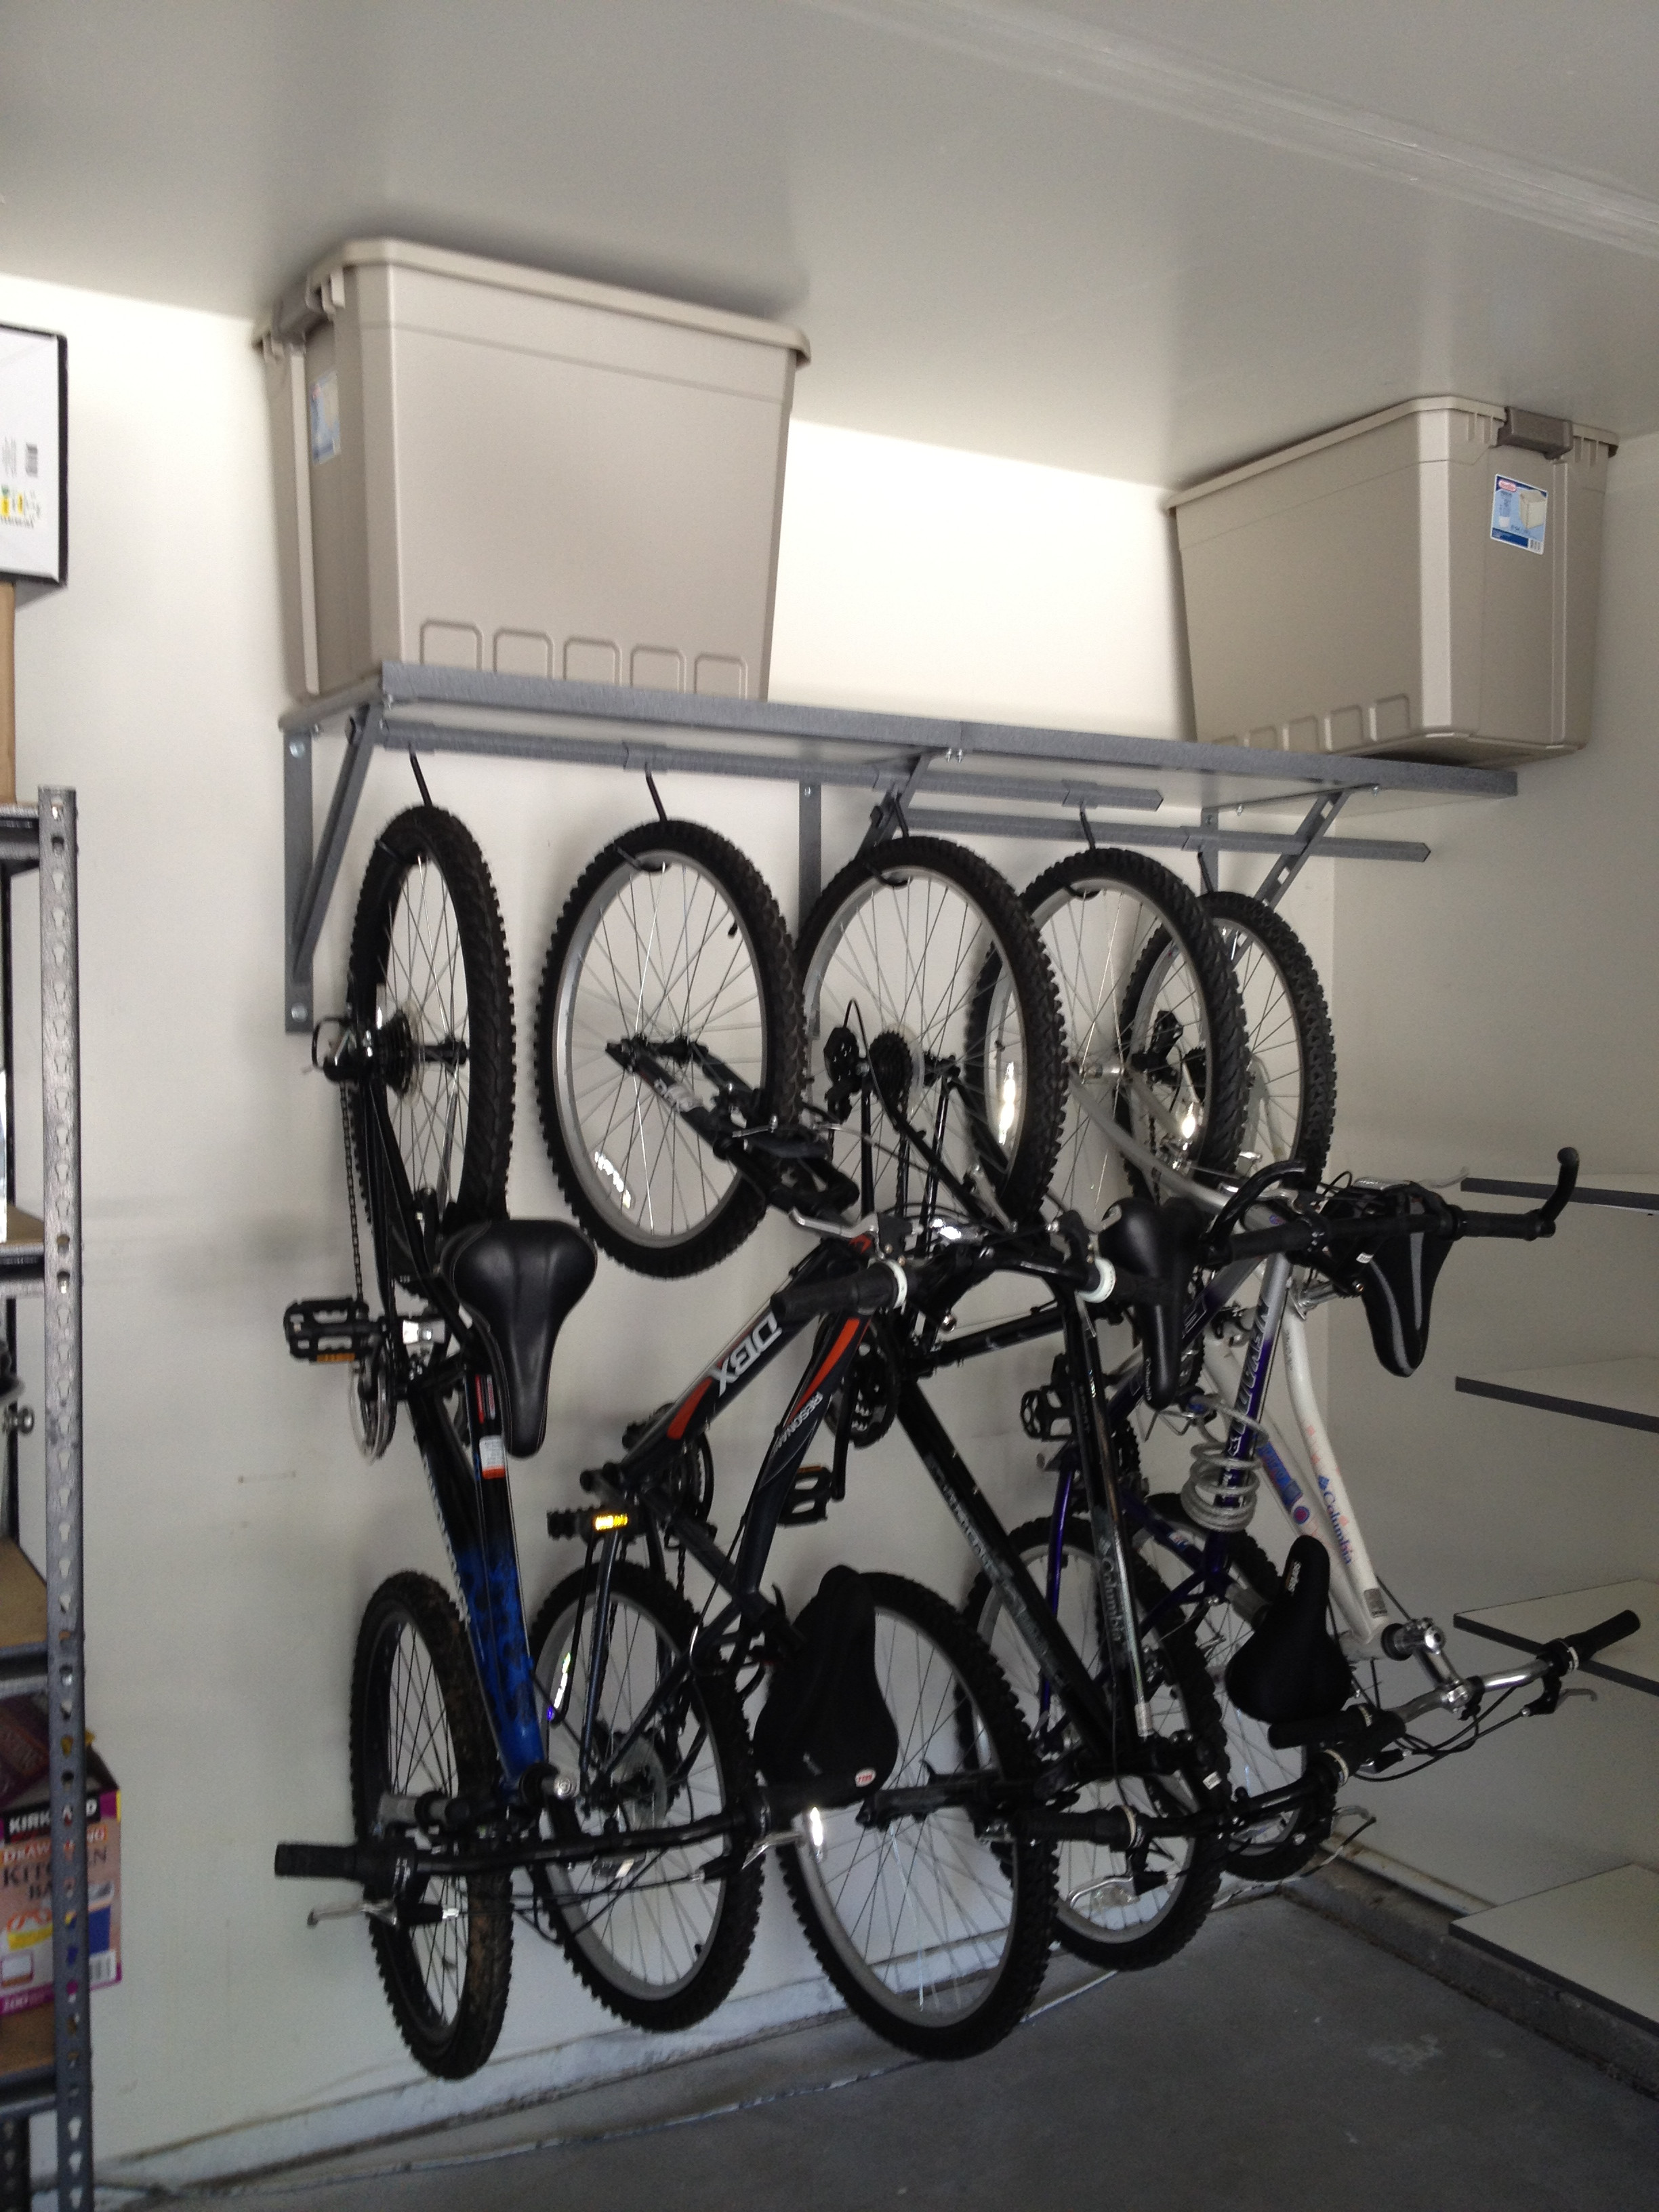 Best ideas about Bike Storage Ideas Garage
. Save or Pin Bike Garage Storage Interior Now.